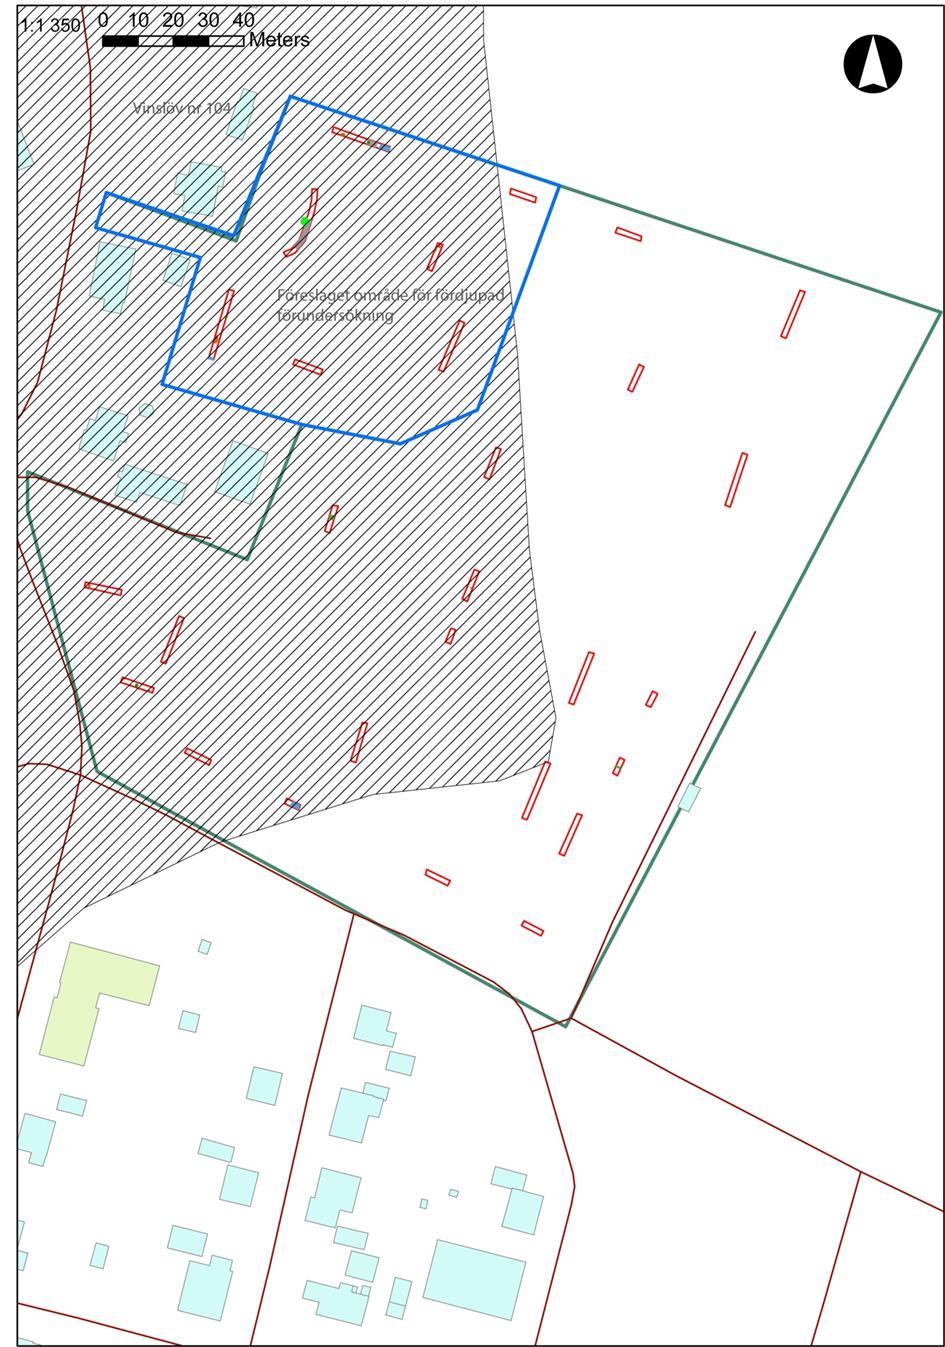 Bilaga 5 Resultat av den översiktliga förundersökningen, blå ram markerar område för bytomt/gårdsläge som föreslås bli föremål för